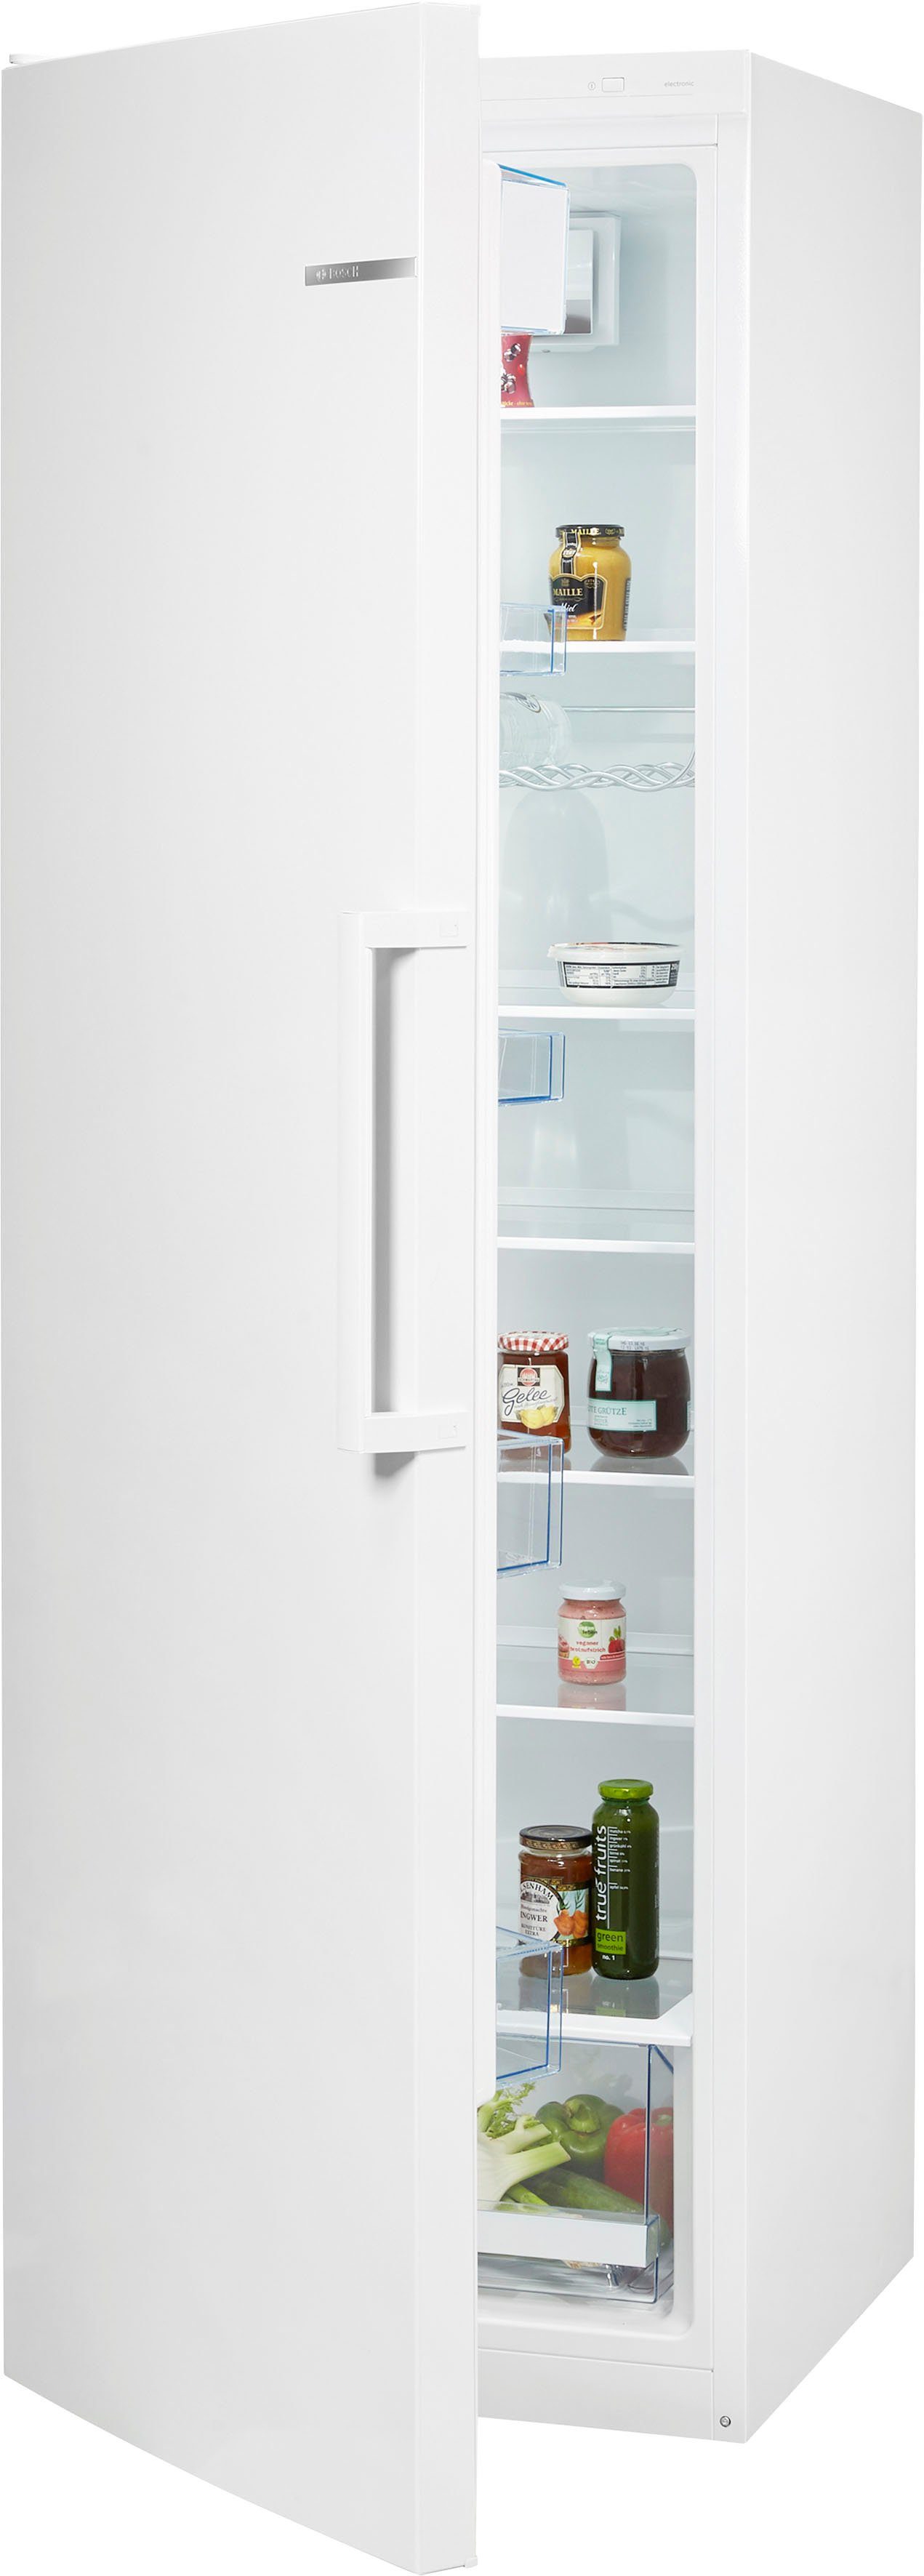 BOSCH Kühlschrank 4 KSV36VWEP, 186 cm hoch, 60 cm breit online kaufen | OTTO